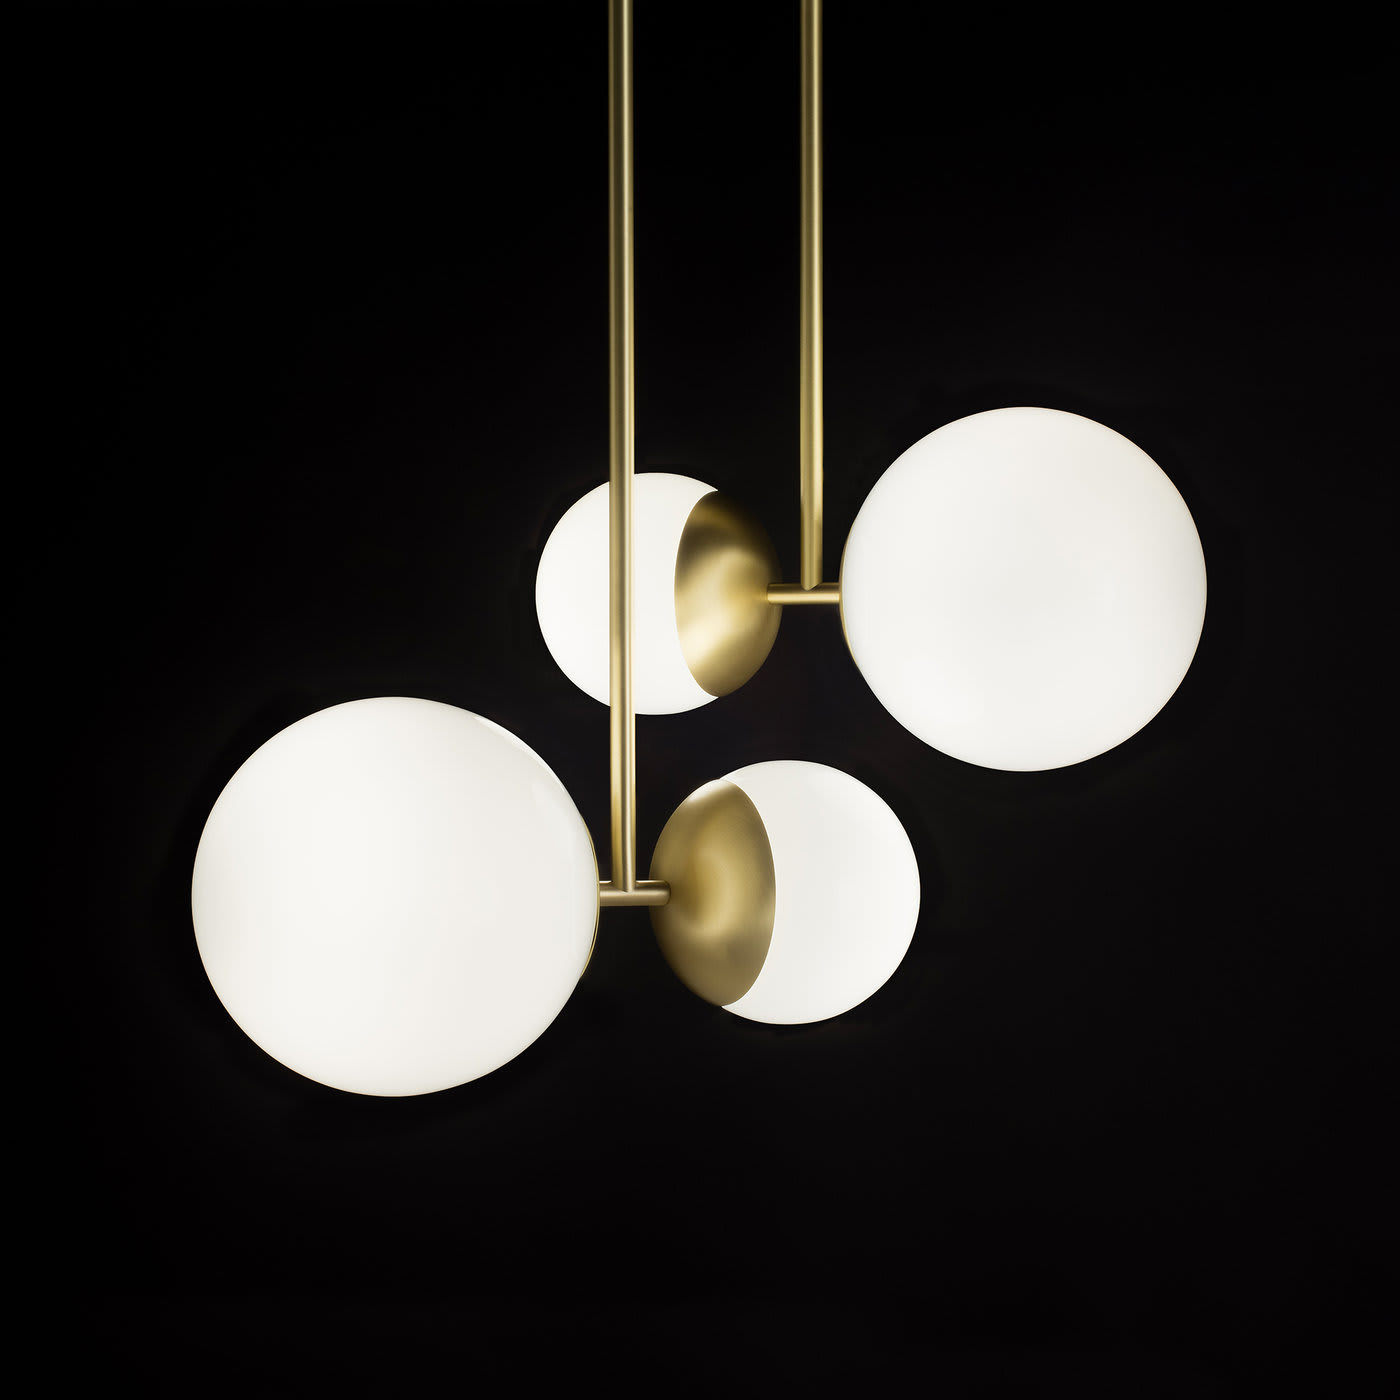 Biba Ceiling Lamp by Lorenza Bozzoli - Tato